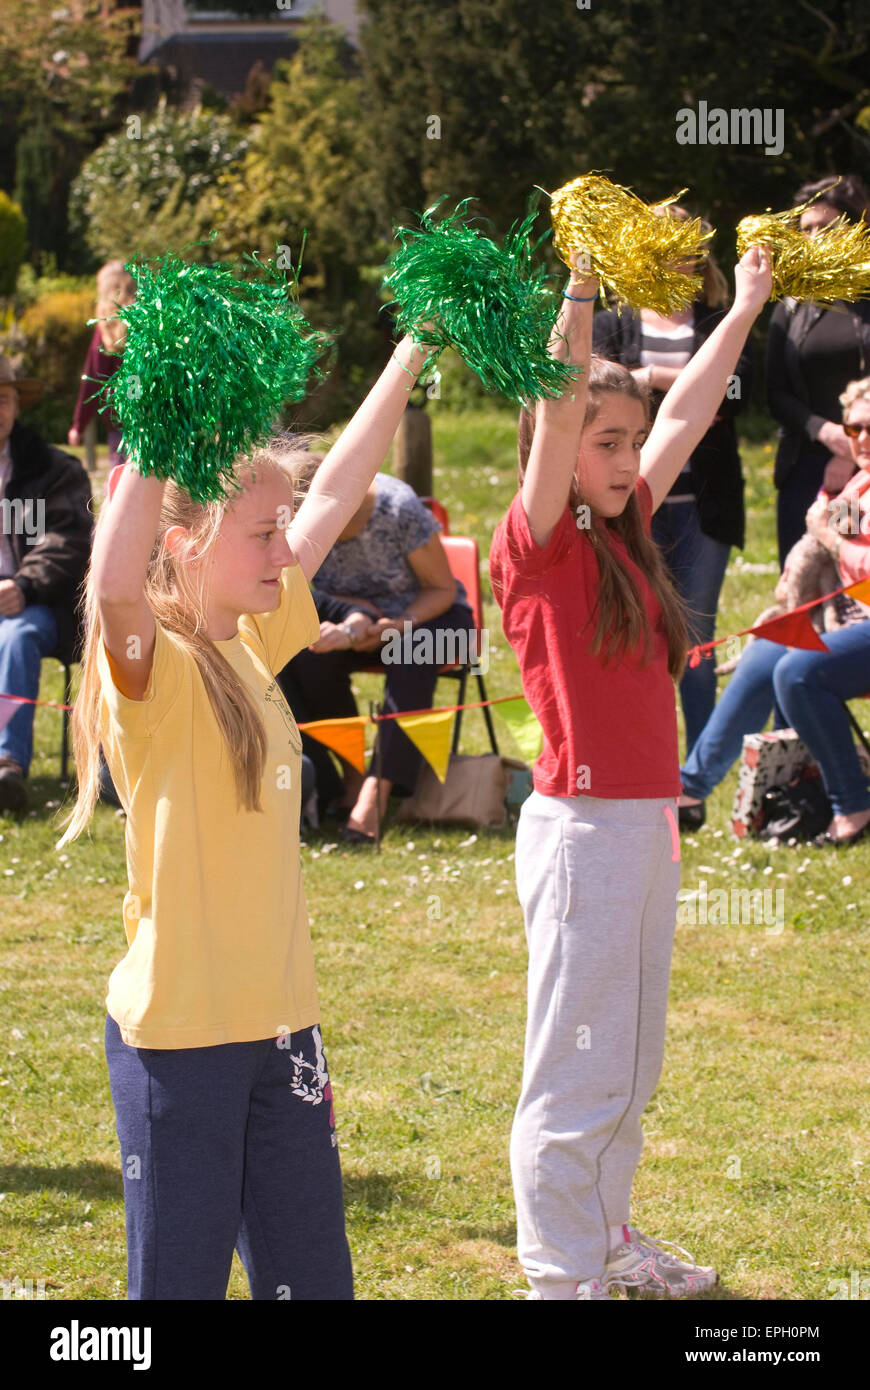 Los jóvenes cheerleaders de mayo en una feria, Oakhanger, Hampshire, Reino Unido. Foto de stock